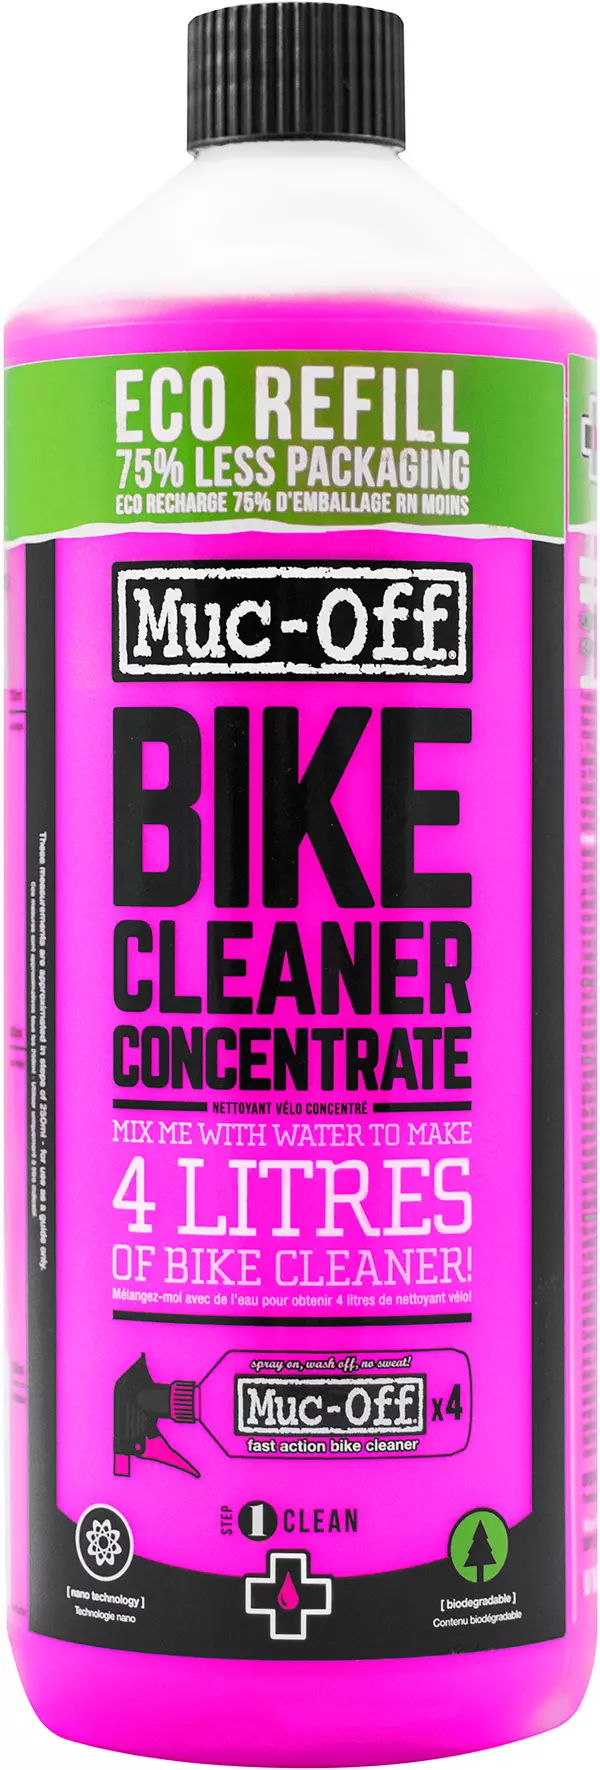 Muc-Off Full Bike Clean 